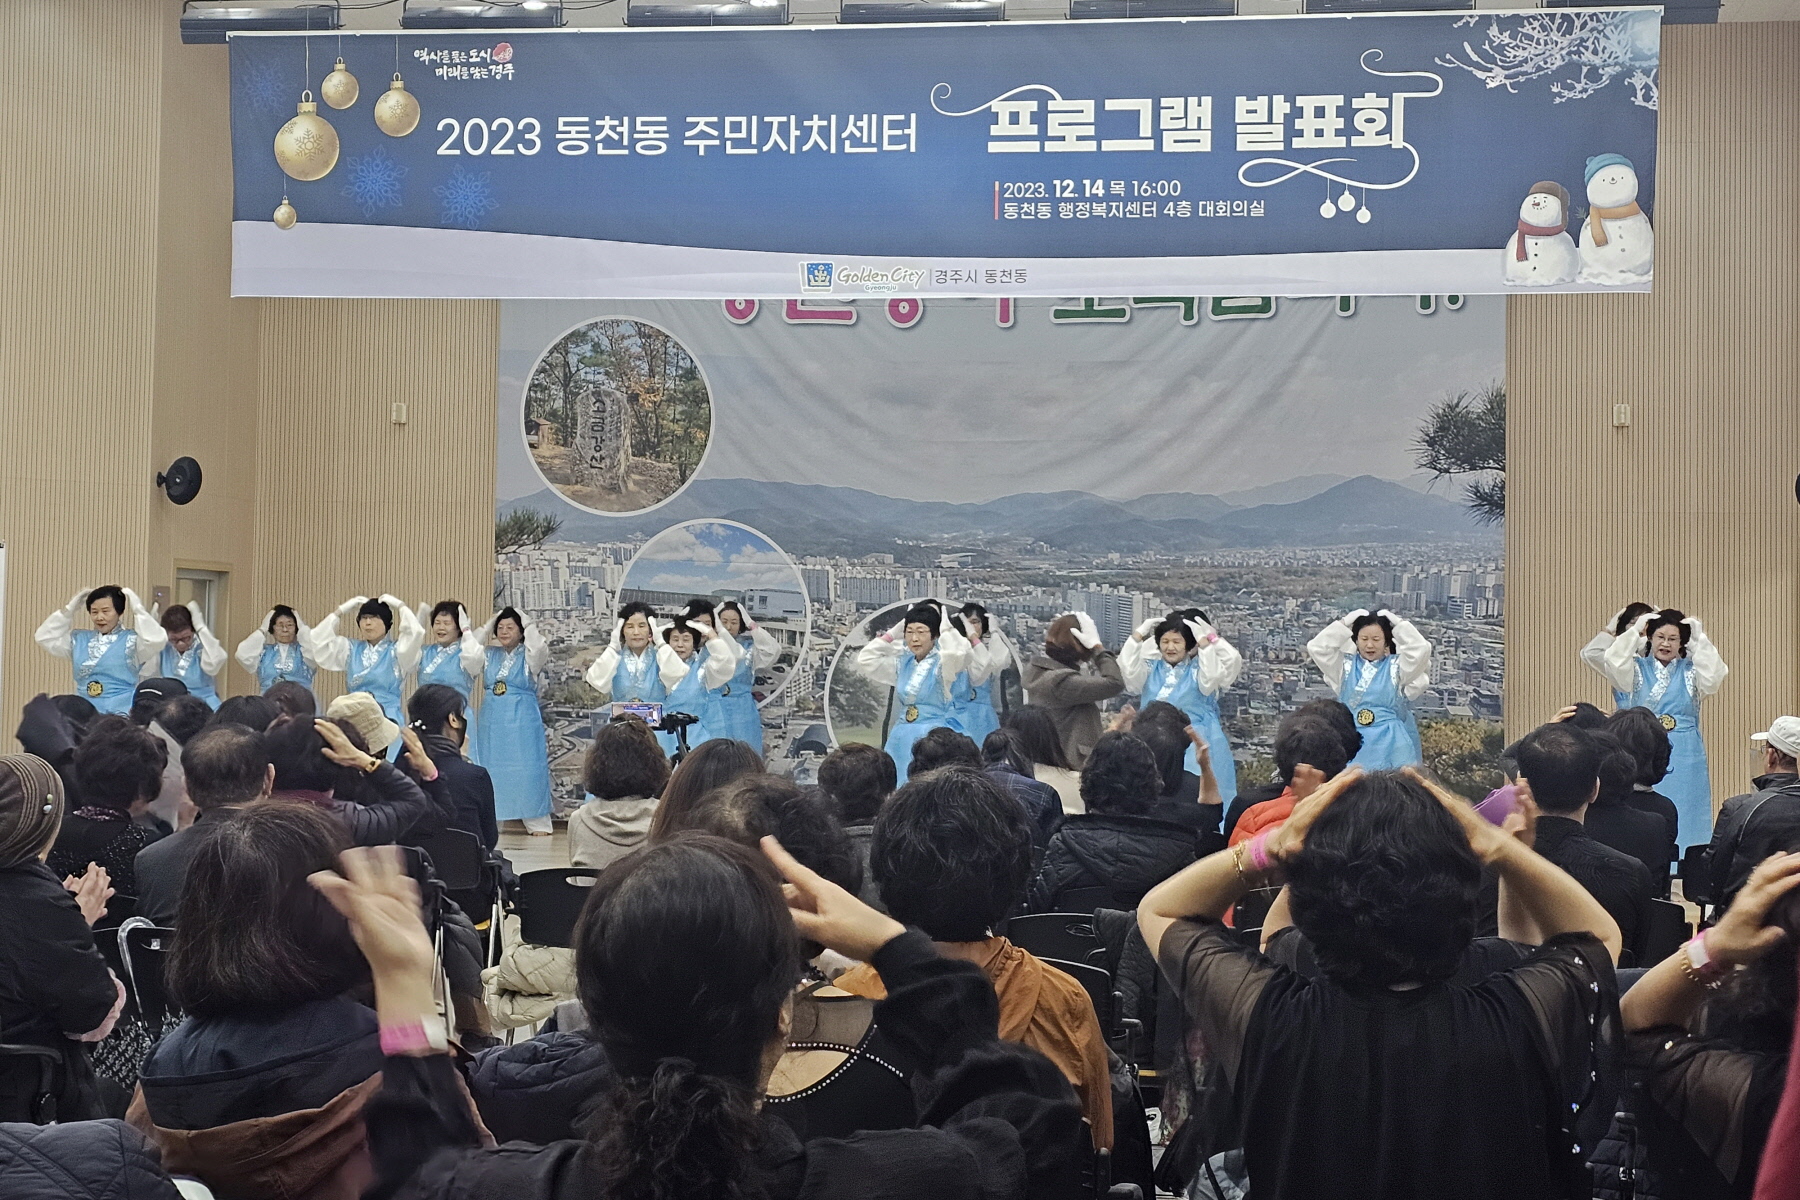 지난 14일 동천동 주민자치위원회에서 ‘2023 주민자치 프로그램 발표회’를 성황리에 개최했다.